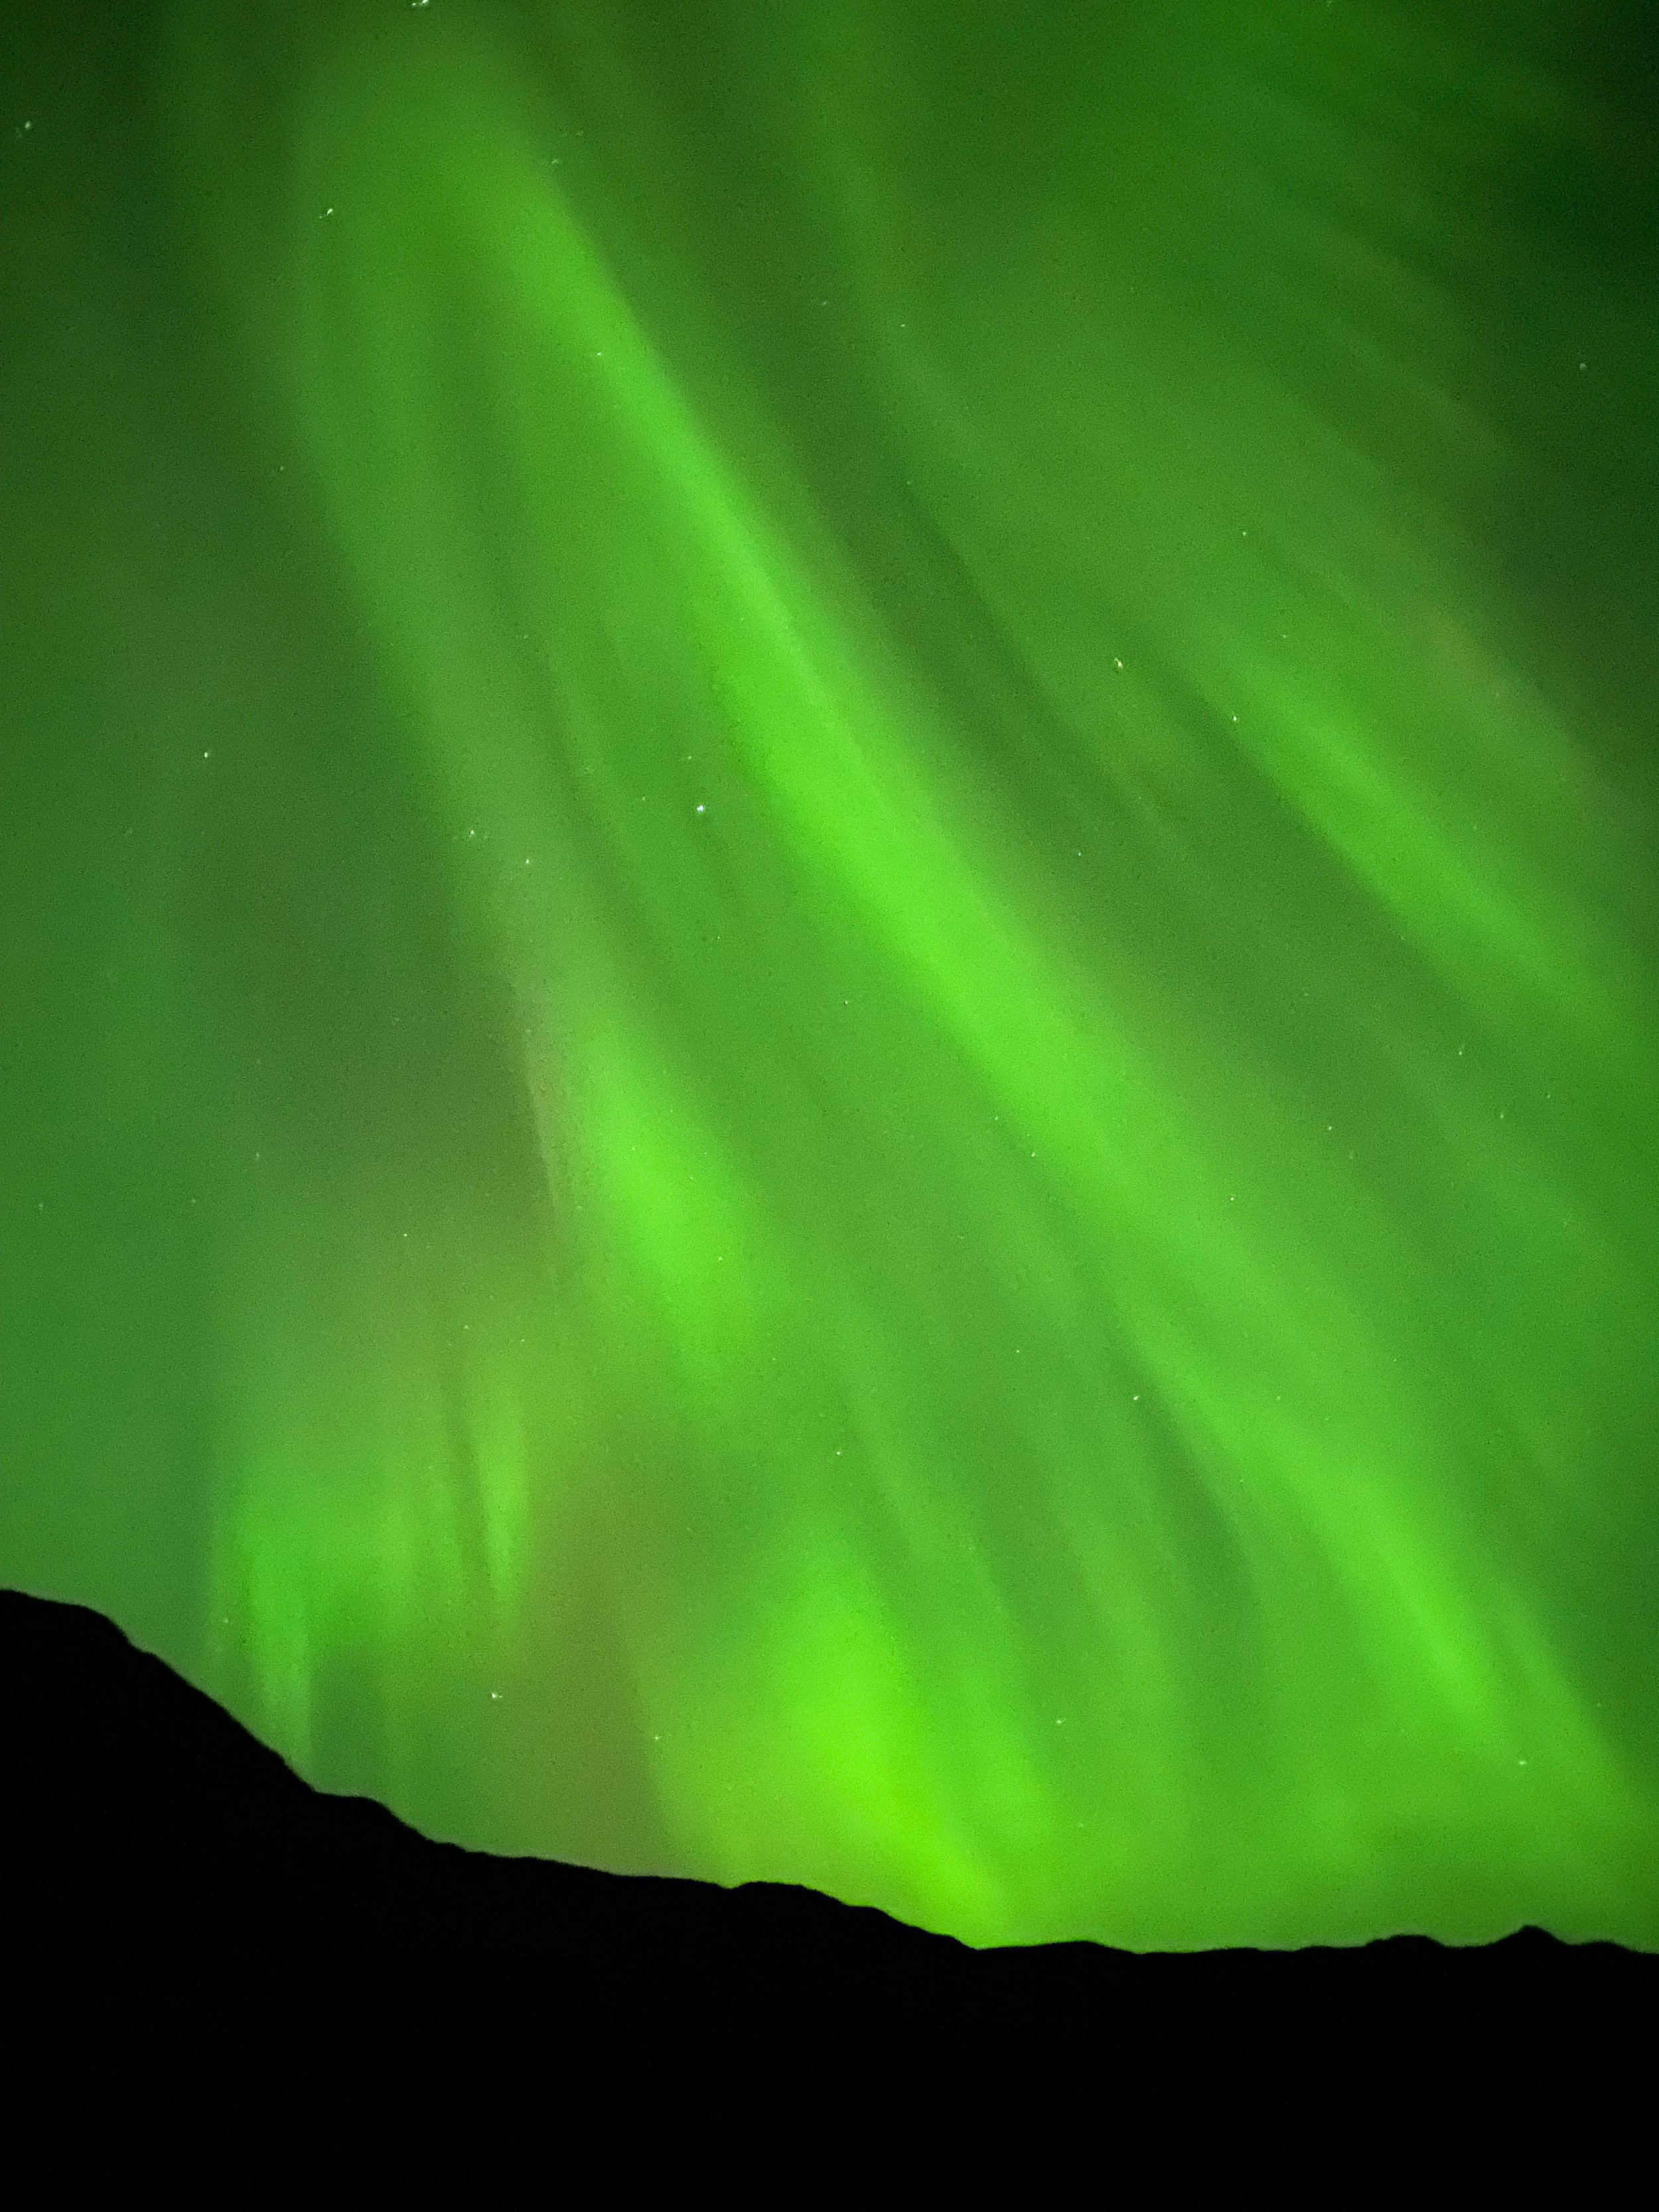 noorderlicht noorwegen zien.jpg